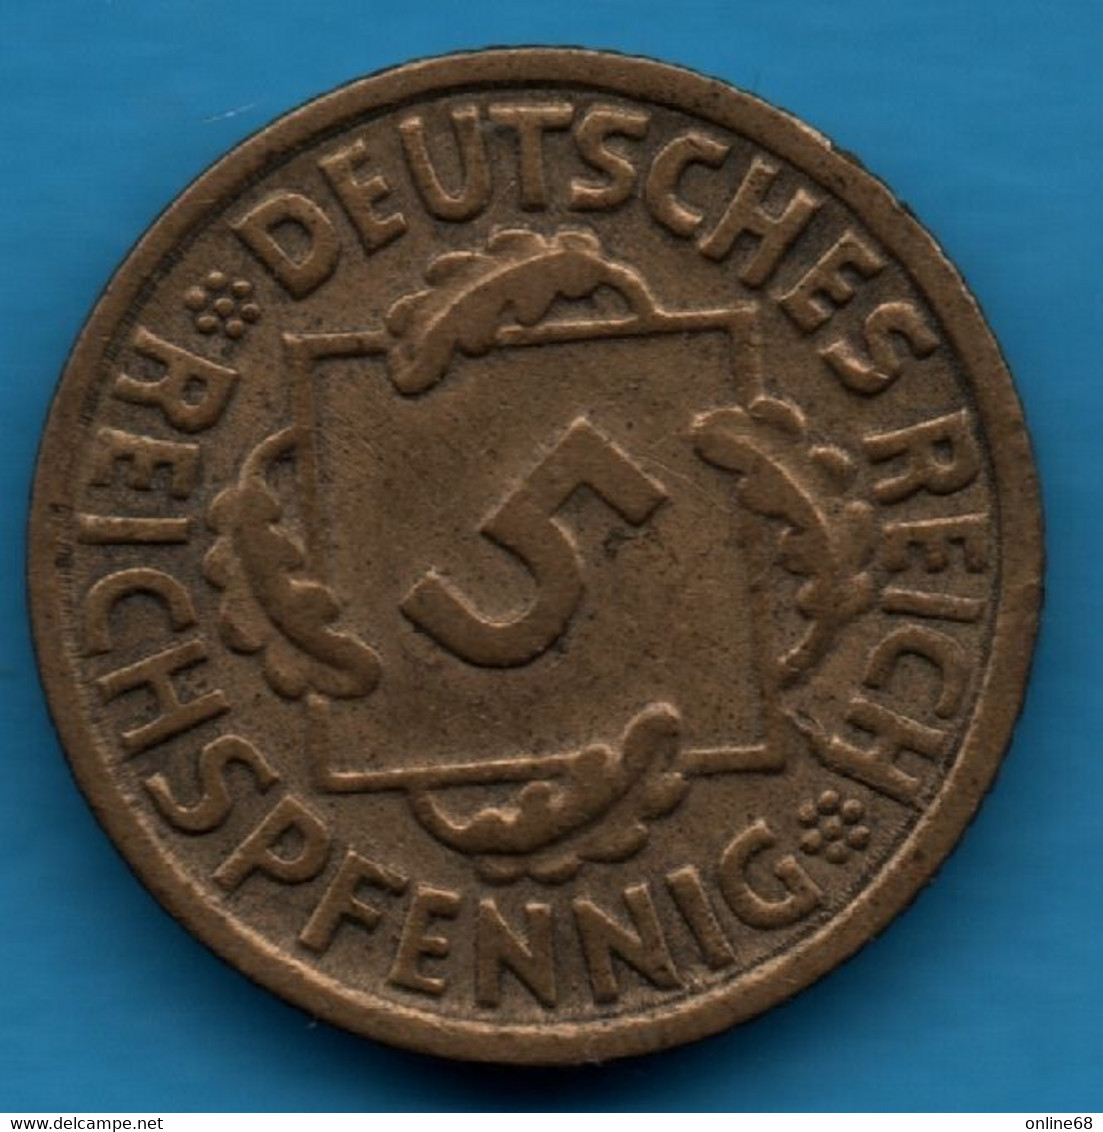 DEUTSCHES REICH 5 REICHSPFENNIG 1936 G KM# 39 WEIMAR - 5 Reichspfennig